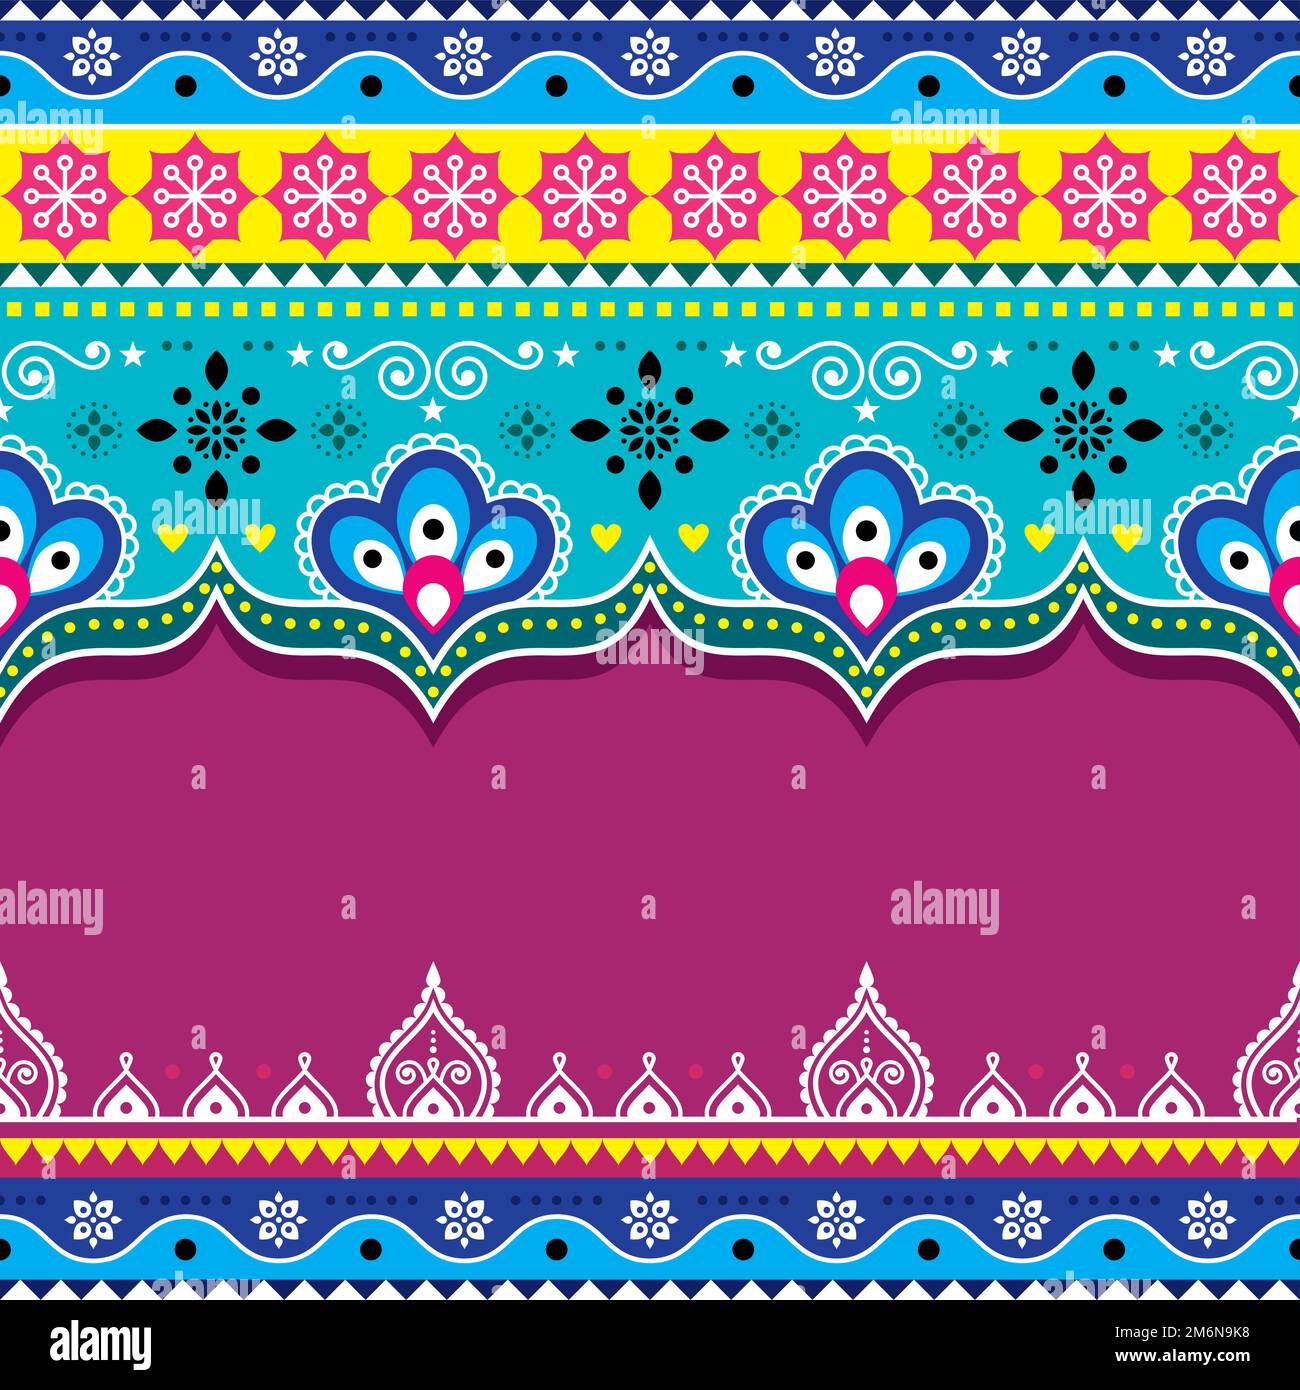 Motif vectoriel de modèle sans couture pakistanais et indiens avec fleurs et espace vide pour le texte, décoration Diwali Illustration de Vecteur